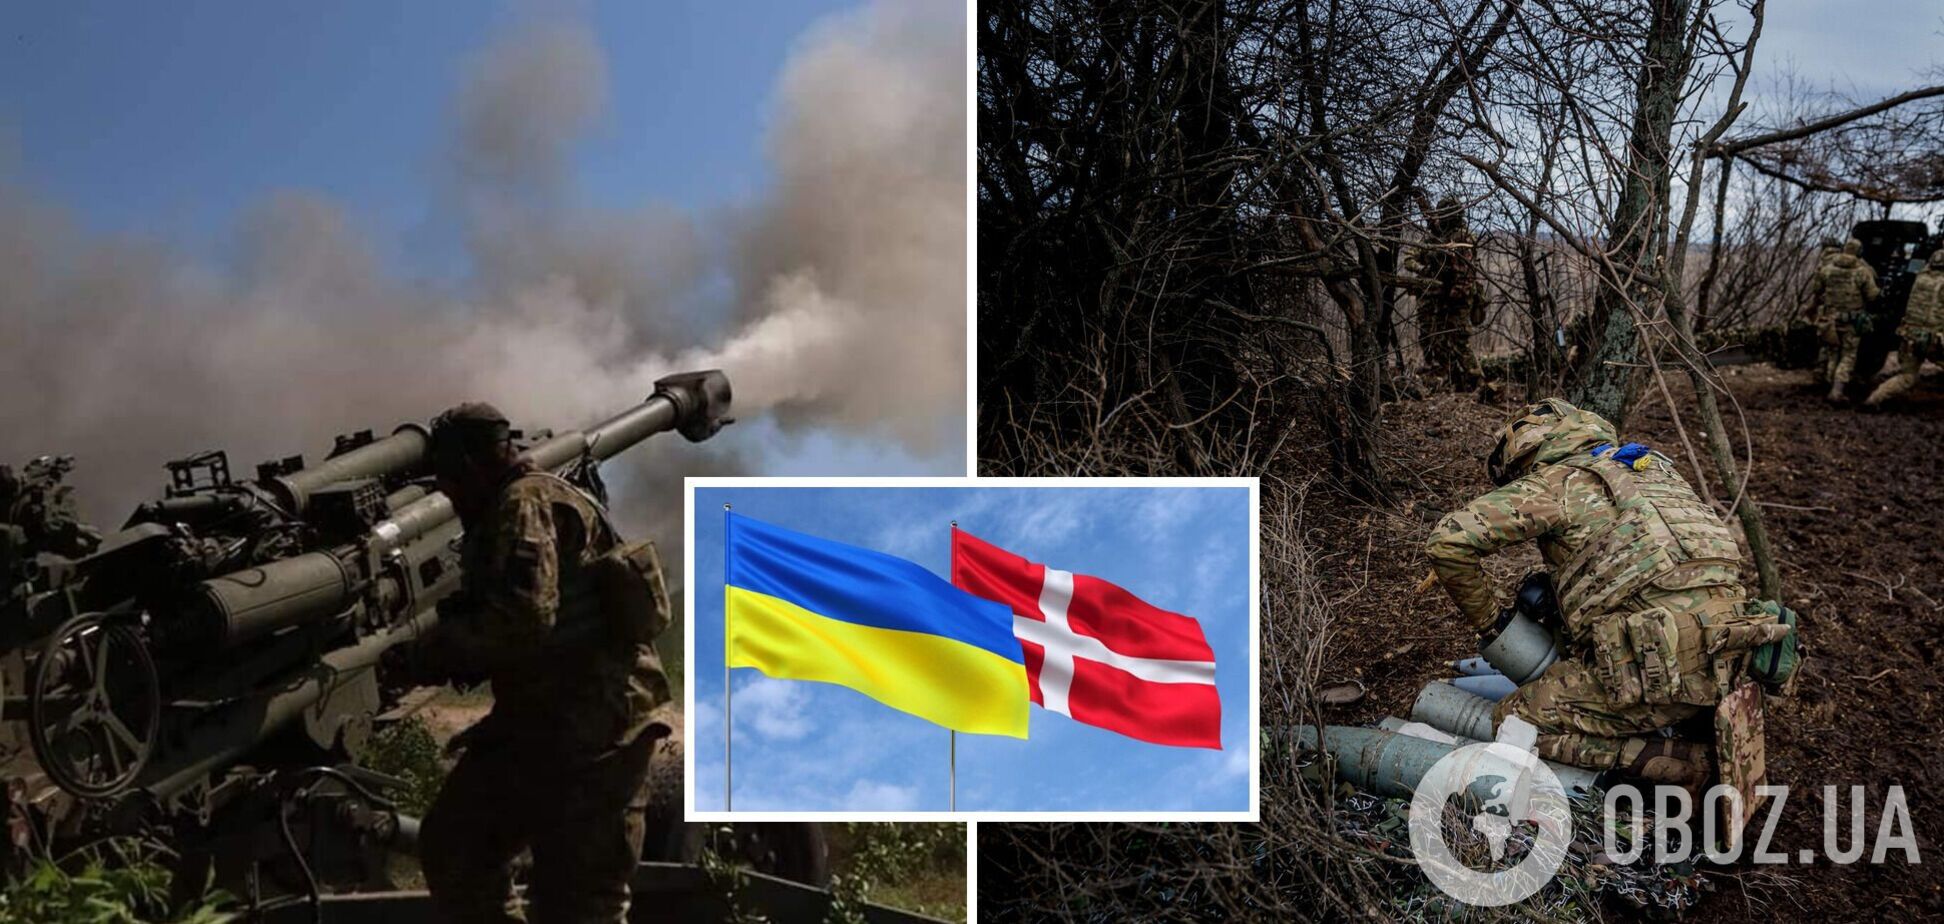 Дания выделила новый пакет военной помощи для Украины на $140 млн: в списке боеприпасы и ракеты для ПВО